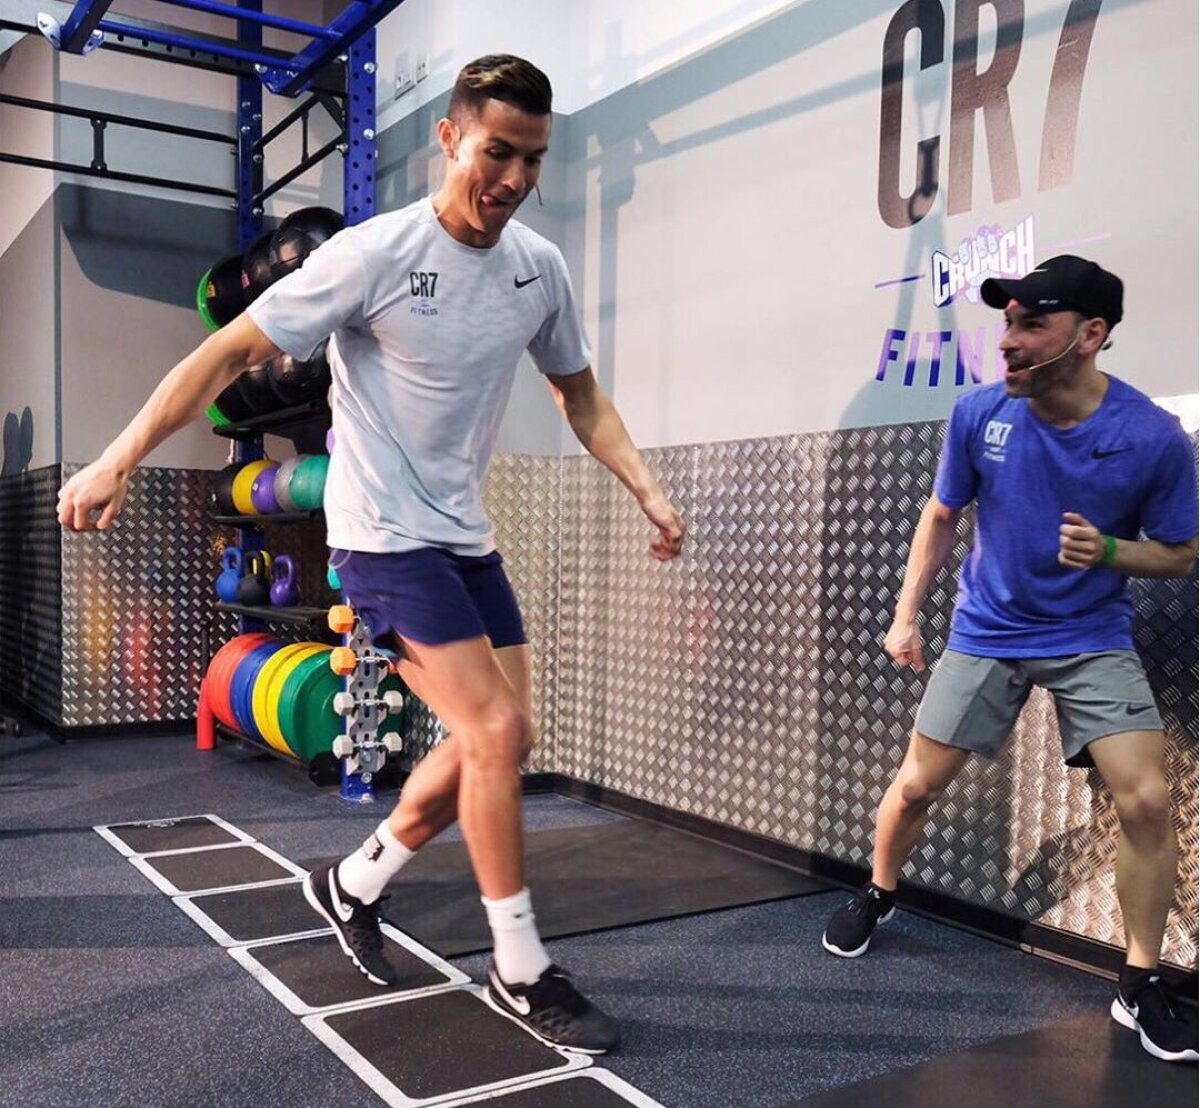 Ronaldo și-a inaugurat o sală de sport: "CR7 Crunch Fitness"